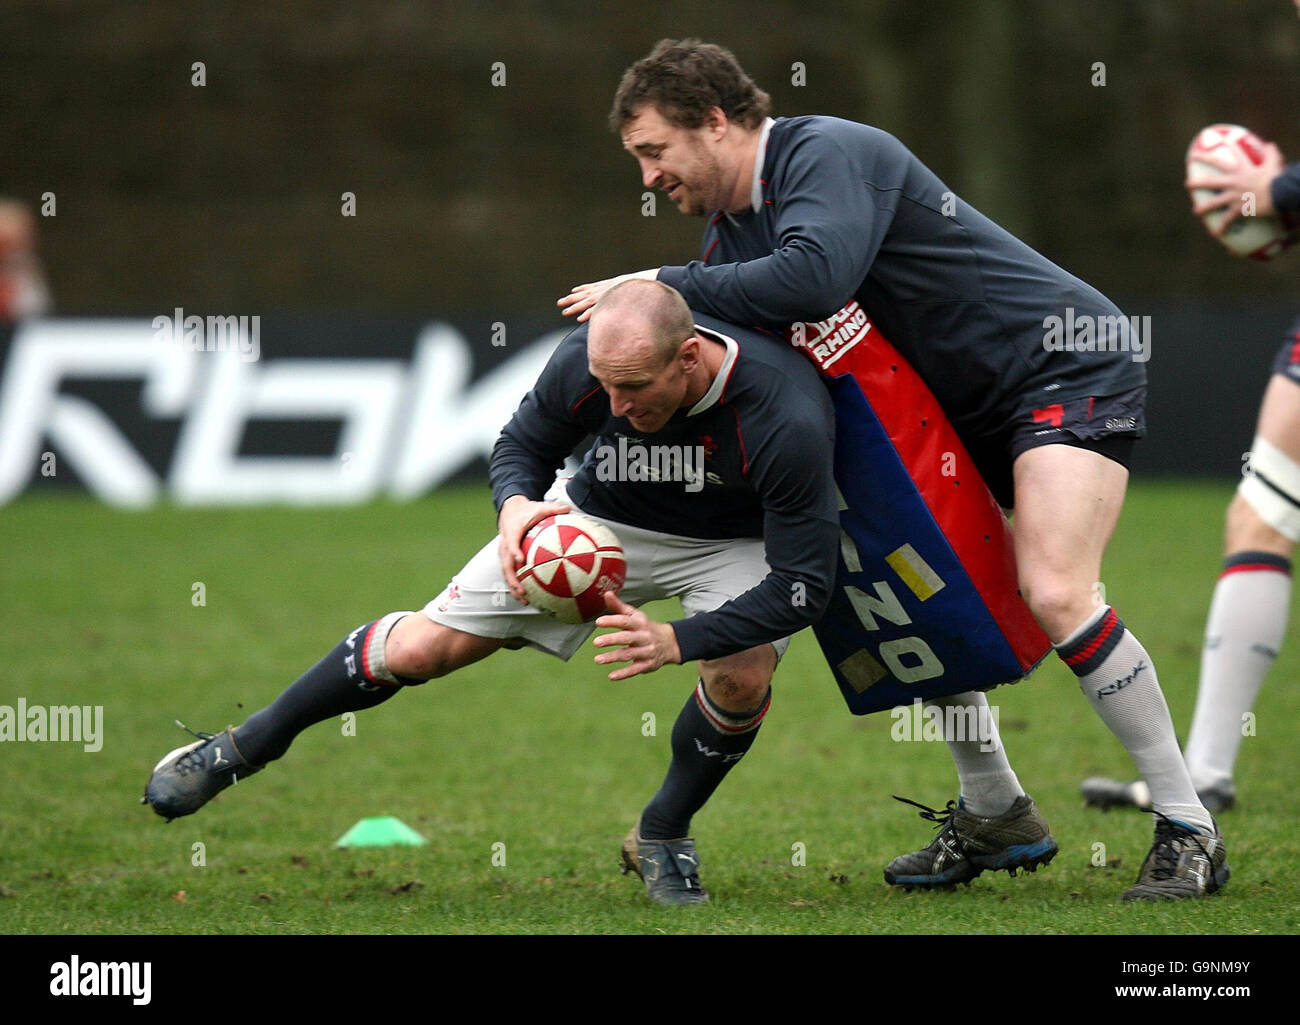 Rugby Union - formation au pays de Galles - Jardins de Sofia.Gareth Thomas s'écrase sur Chris Horsmanlors d'une session d'entraînement aux jardins de Sofia, à Cardiff. Banque D'Images